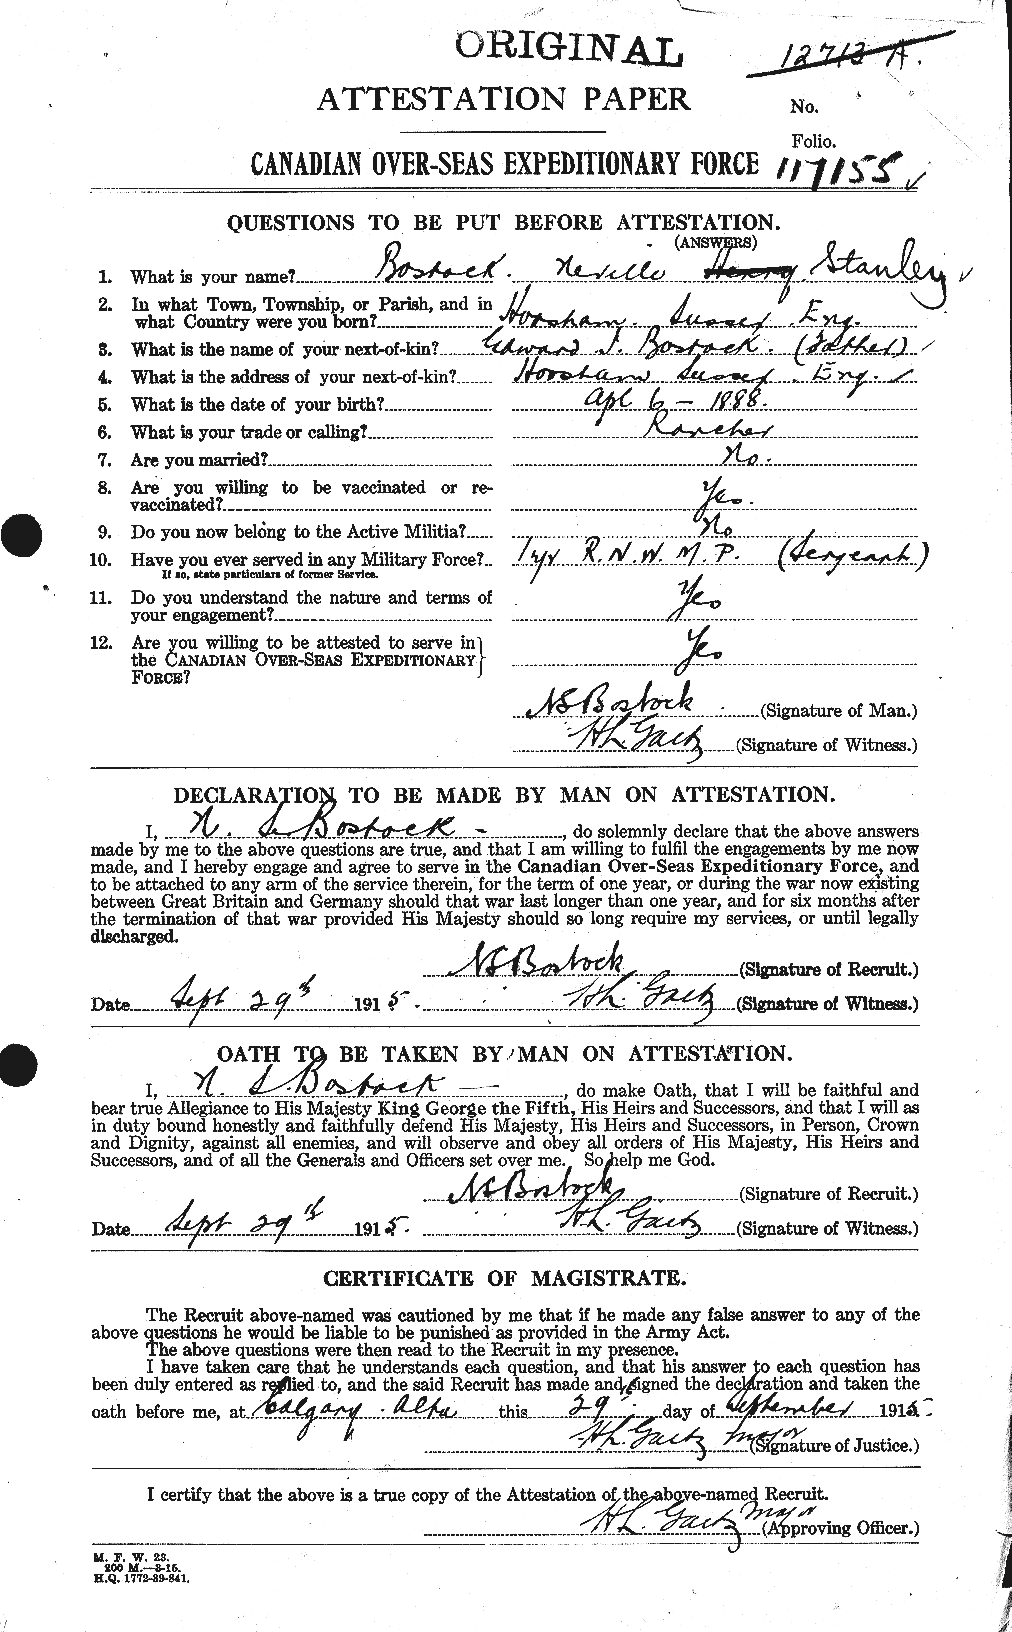 Dossiers du Personnel de la Première Guerre mondiale - CEC 251879a